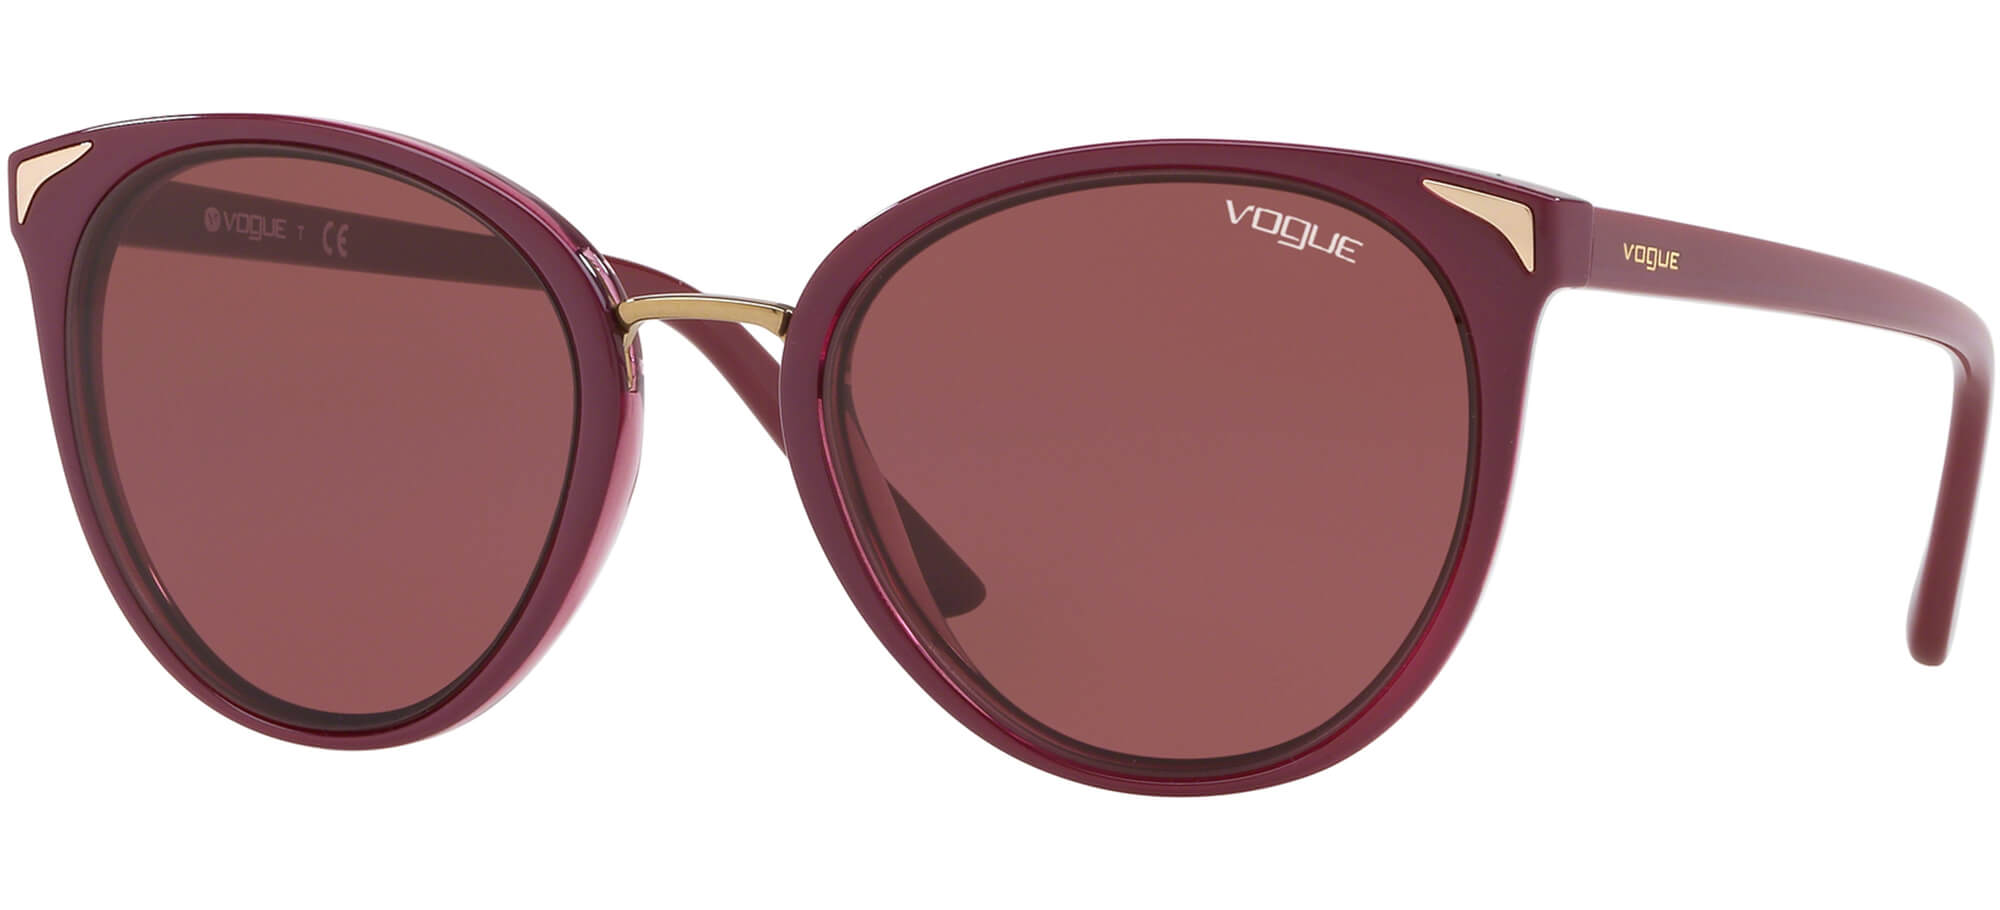 VogueVO 5230SRed/violet (2555/75)